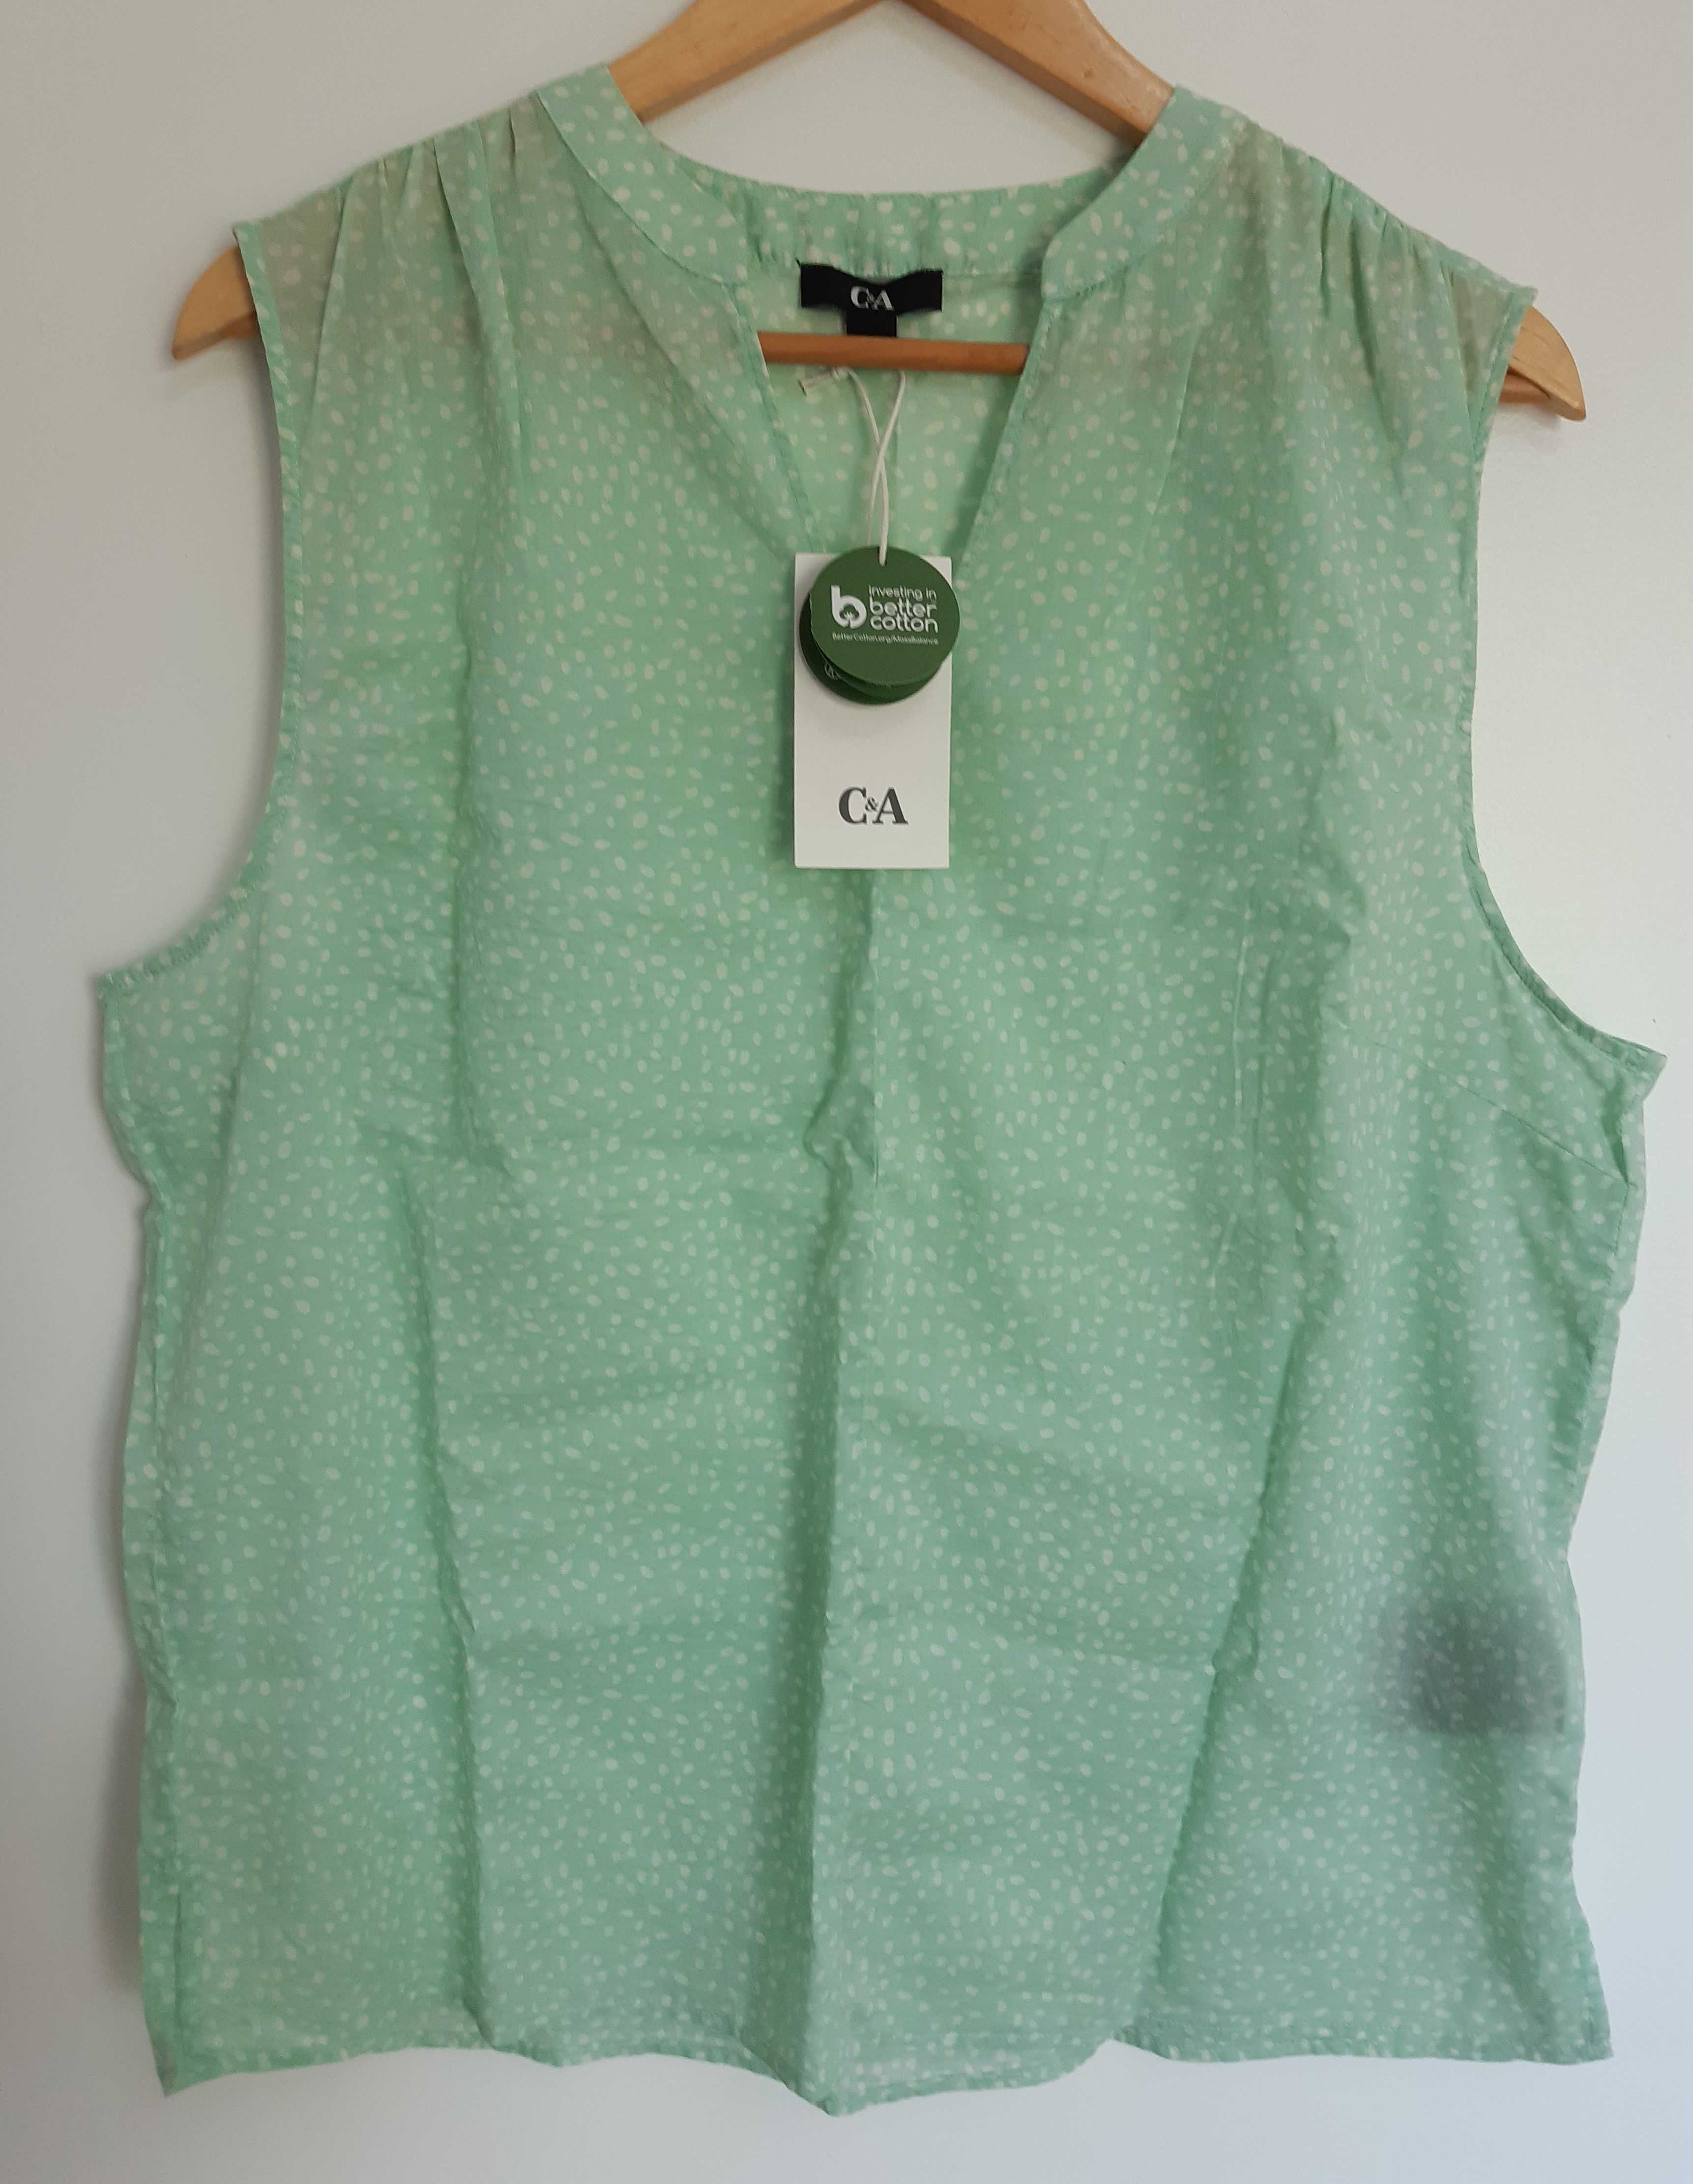 Blusa/camisa C&A decote V cavas verde/branco tamanho 42